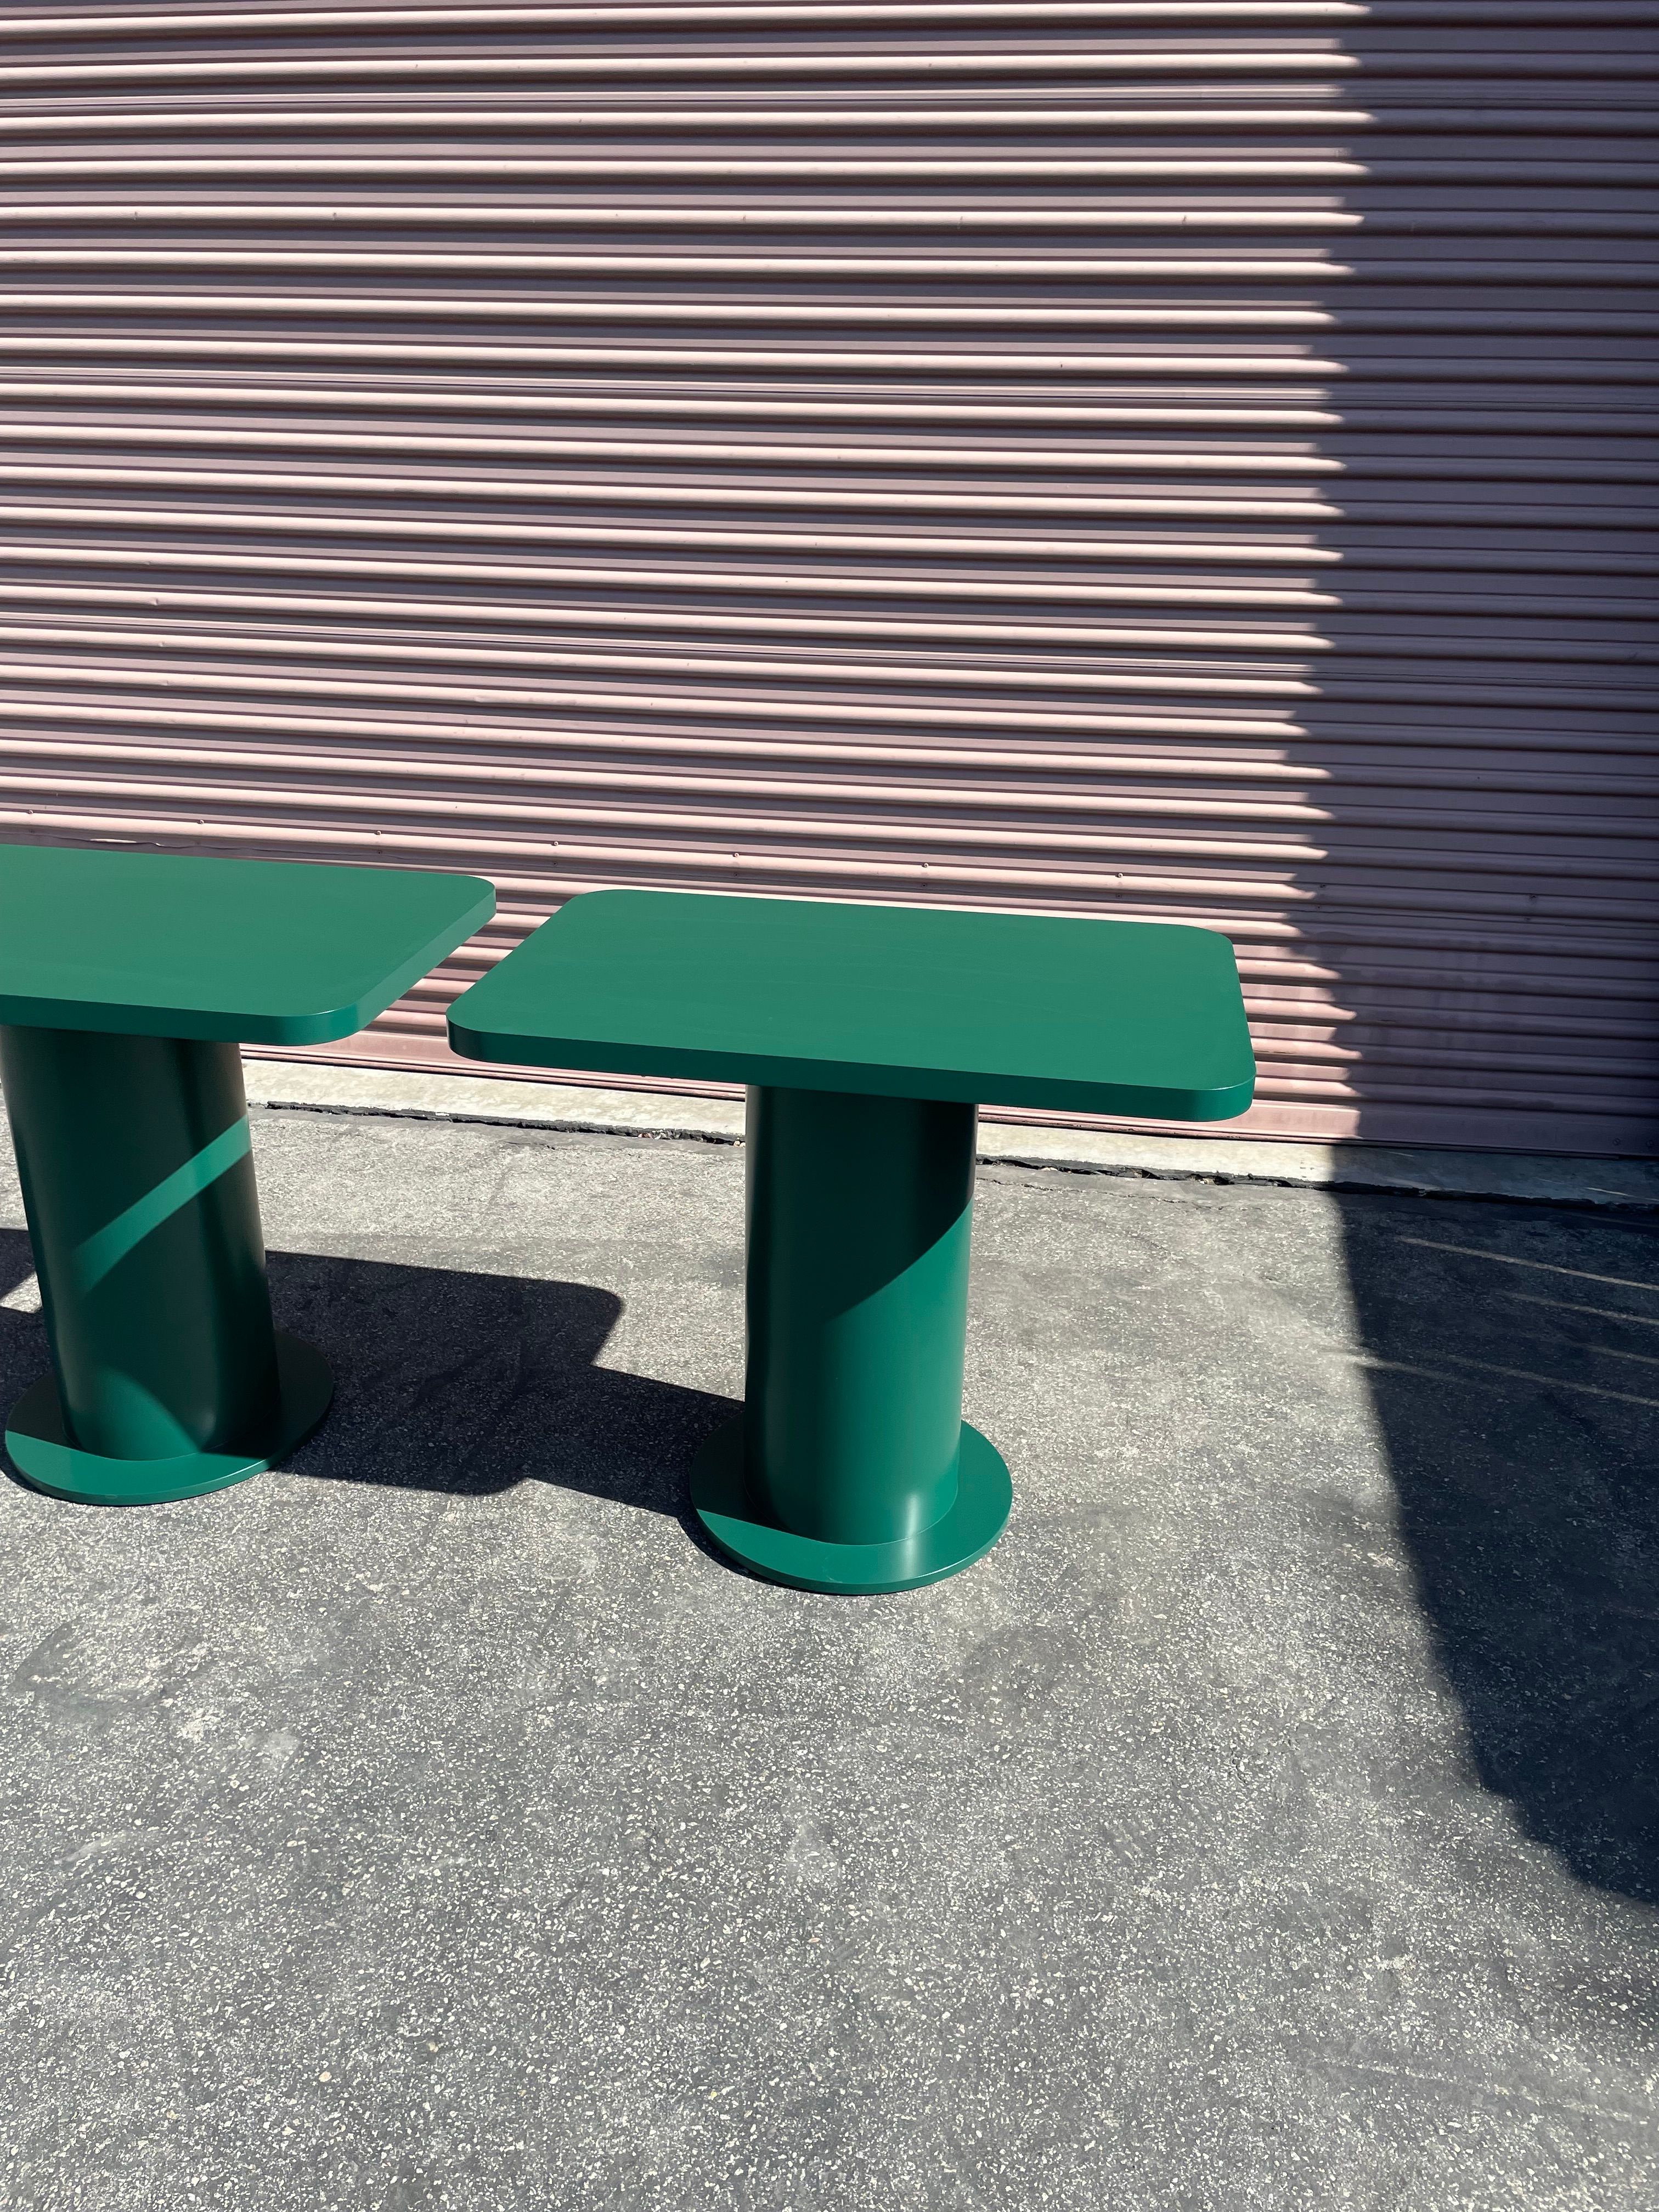  Pedestal Tables - Folklor LA product image 4